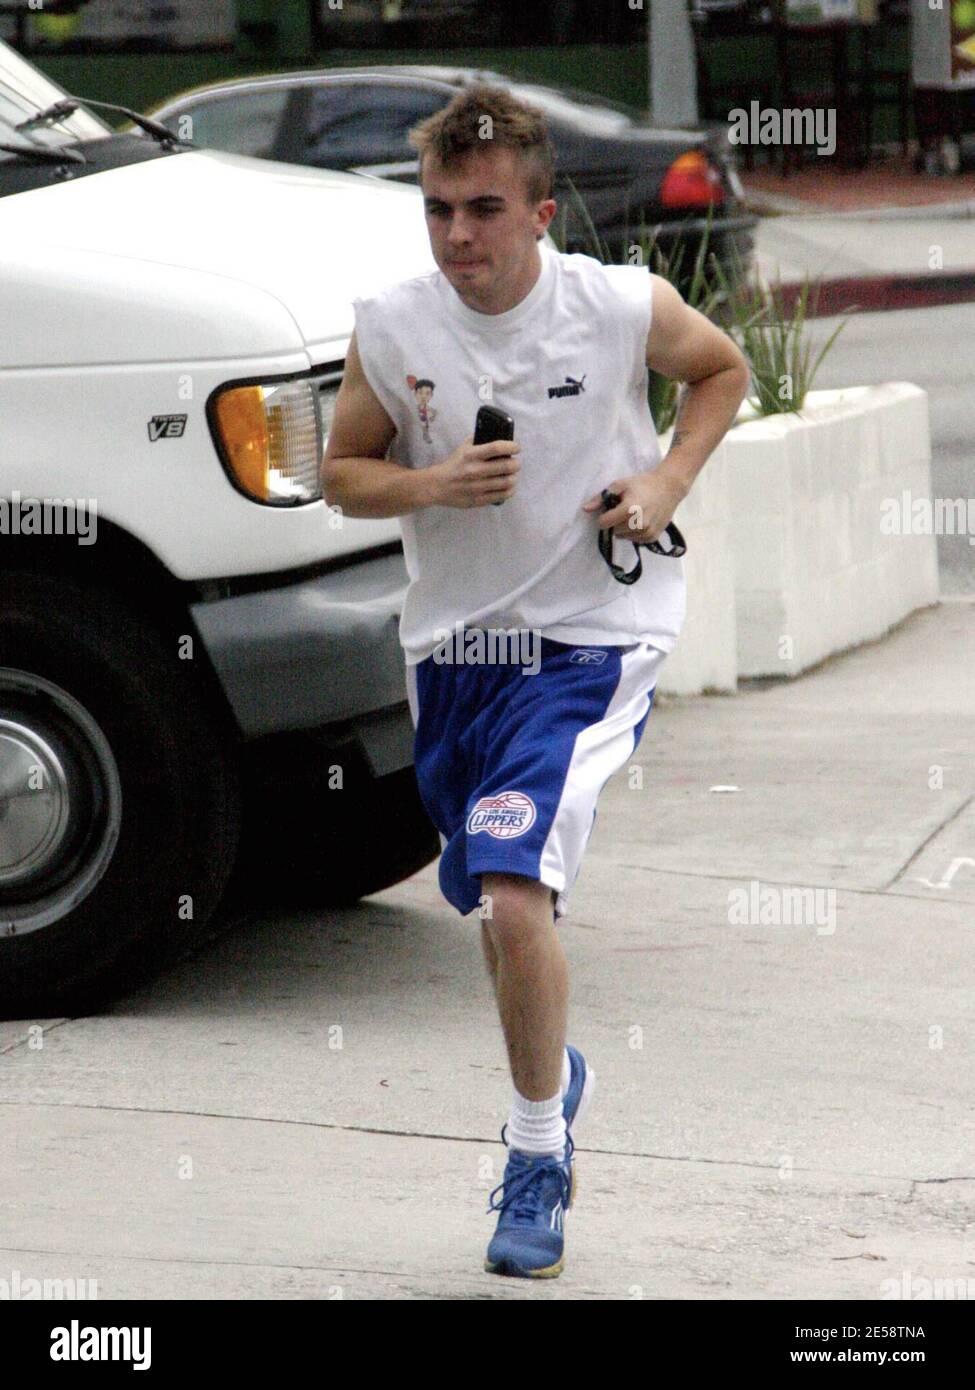 Exclusif !! Frankie Muniz est un zéro! Muniz portait un t-shirt personnalisé tout en faisant du jogging à la salle de gym. West Hollywood, Californie, 10/27/07. [[rac ral]] Banque D'Images